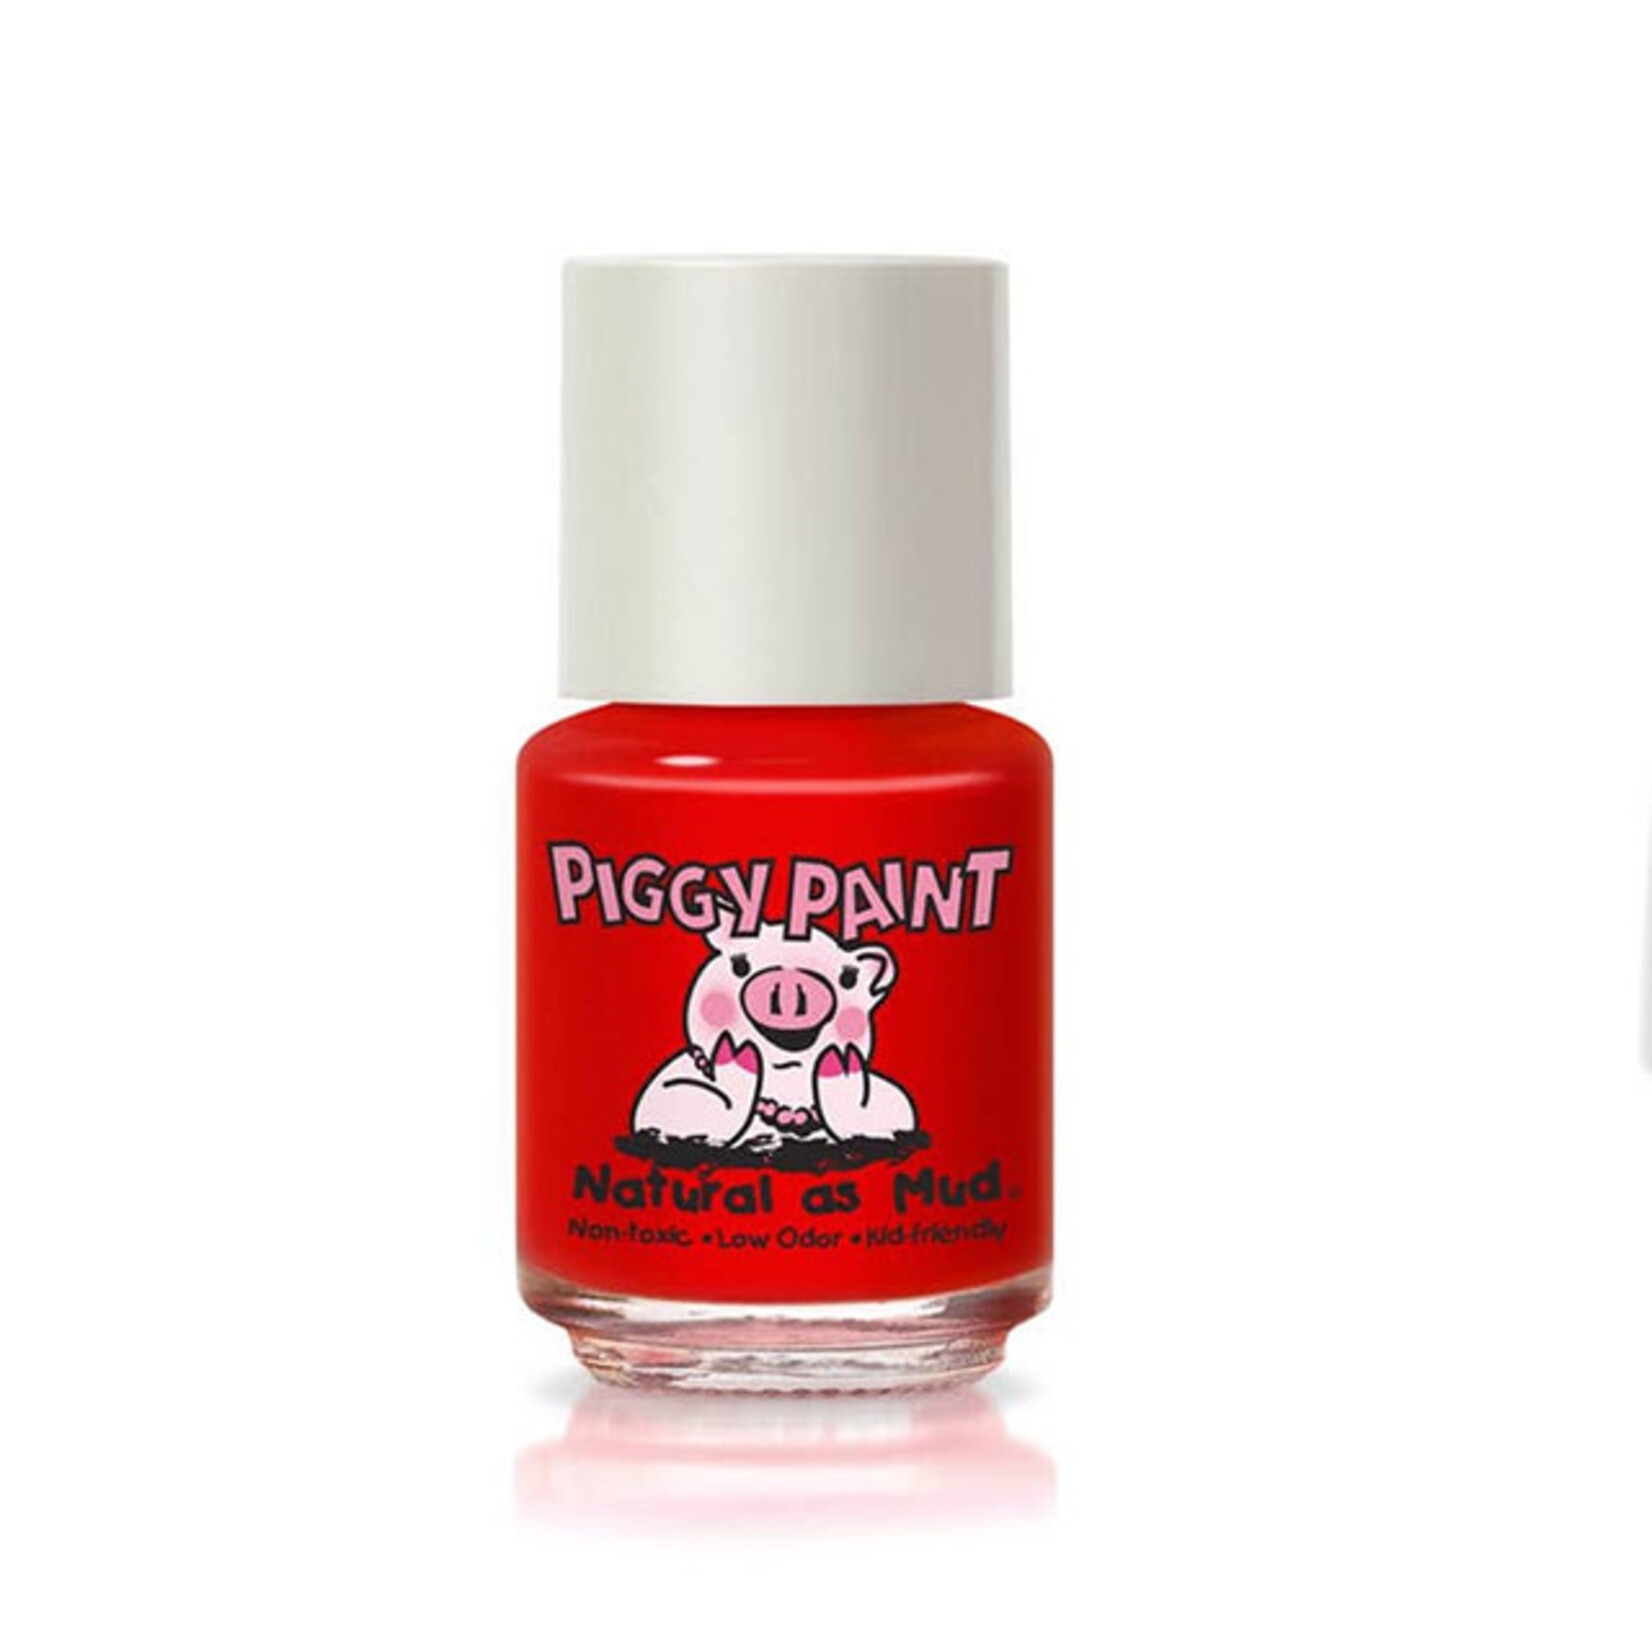 piggy paint small piggy paint